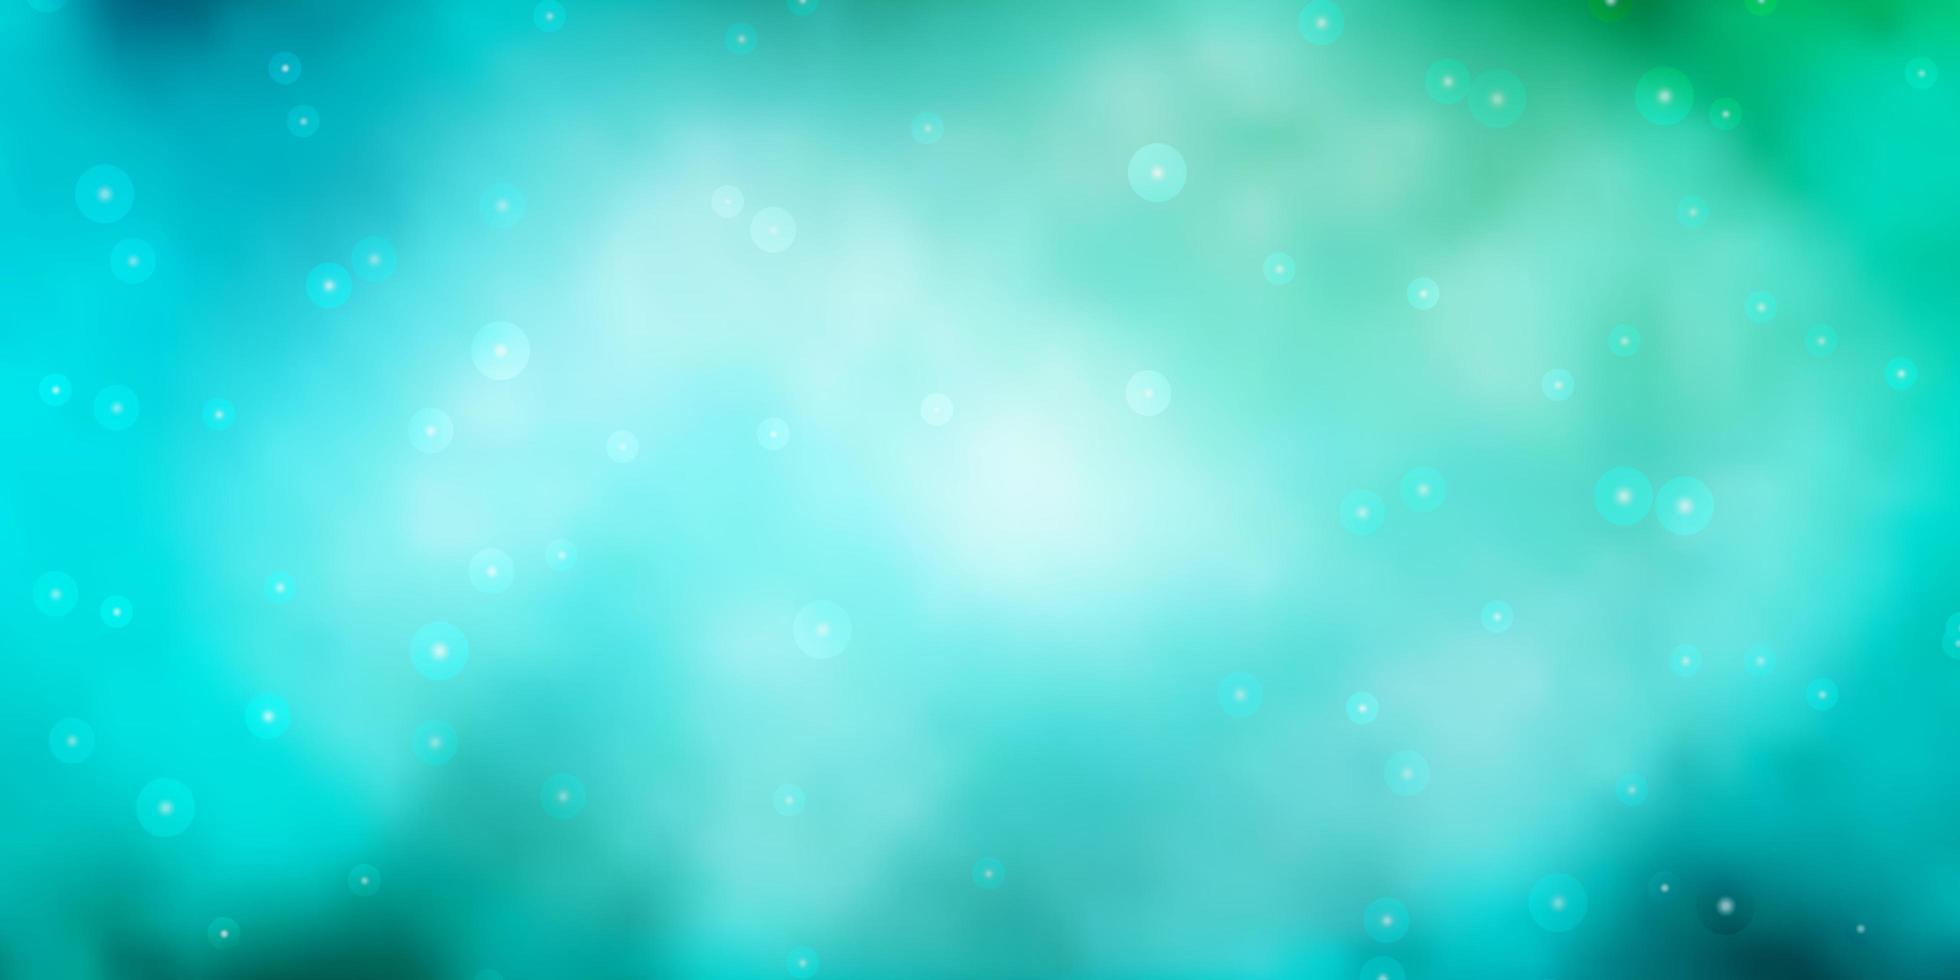 modèle vectoriel bleu clair et vert avec des étoiles au néon. illustration abstraite géométrique moderne avec des étoiles. conception pour la promotion de votre entreprise.